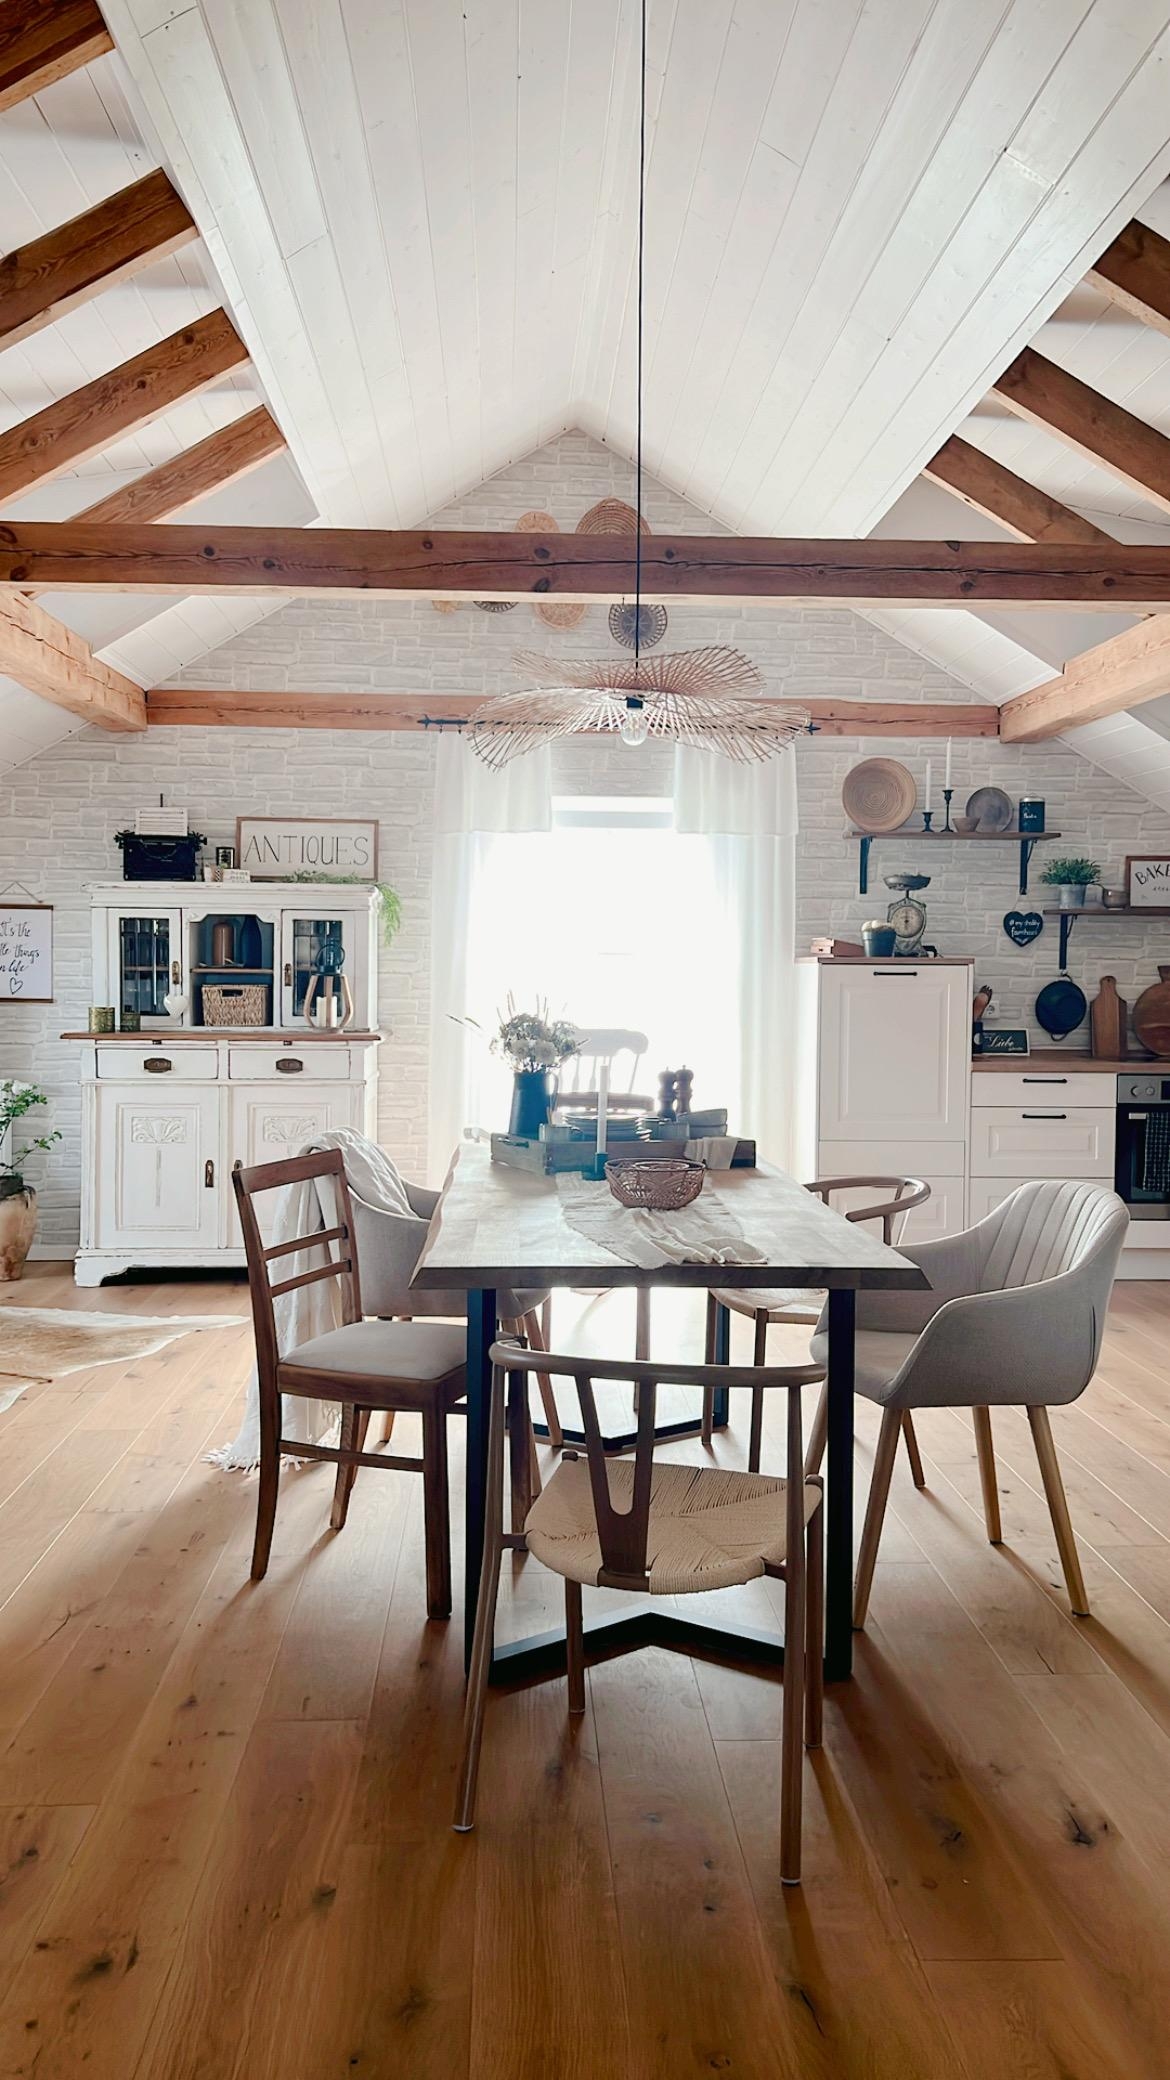 Ich liebe diesen Blickwinkel in unseren offenen Wohnbereich ♥️
#couchstyle #Raumplanung 